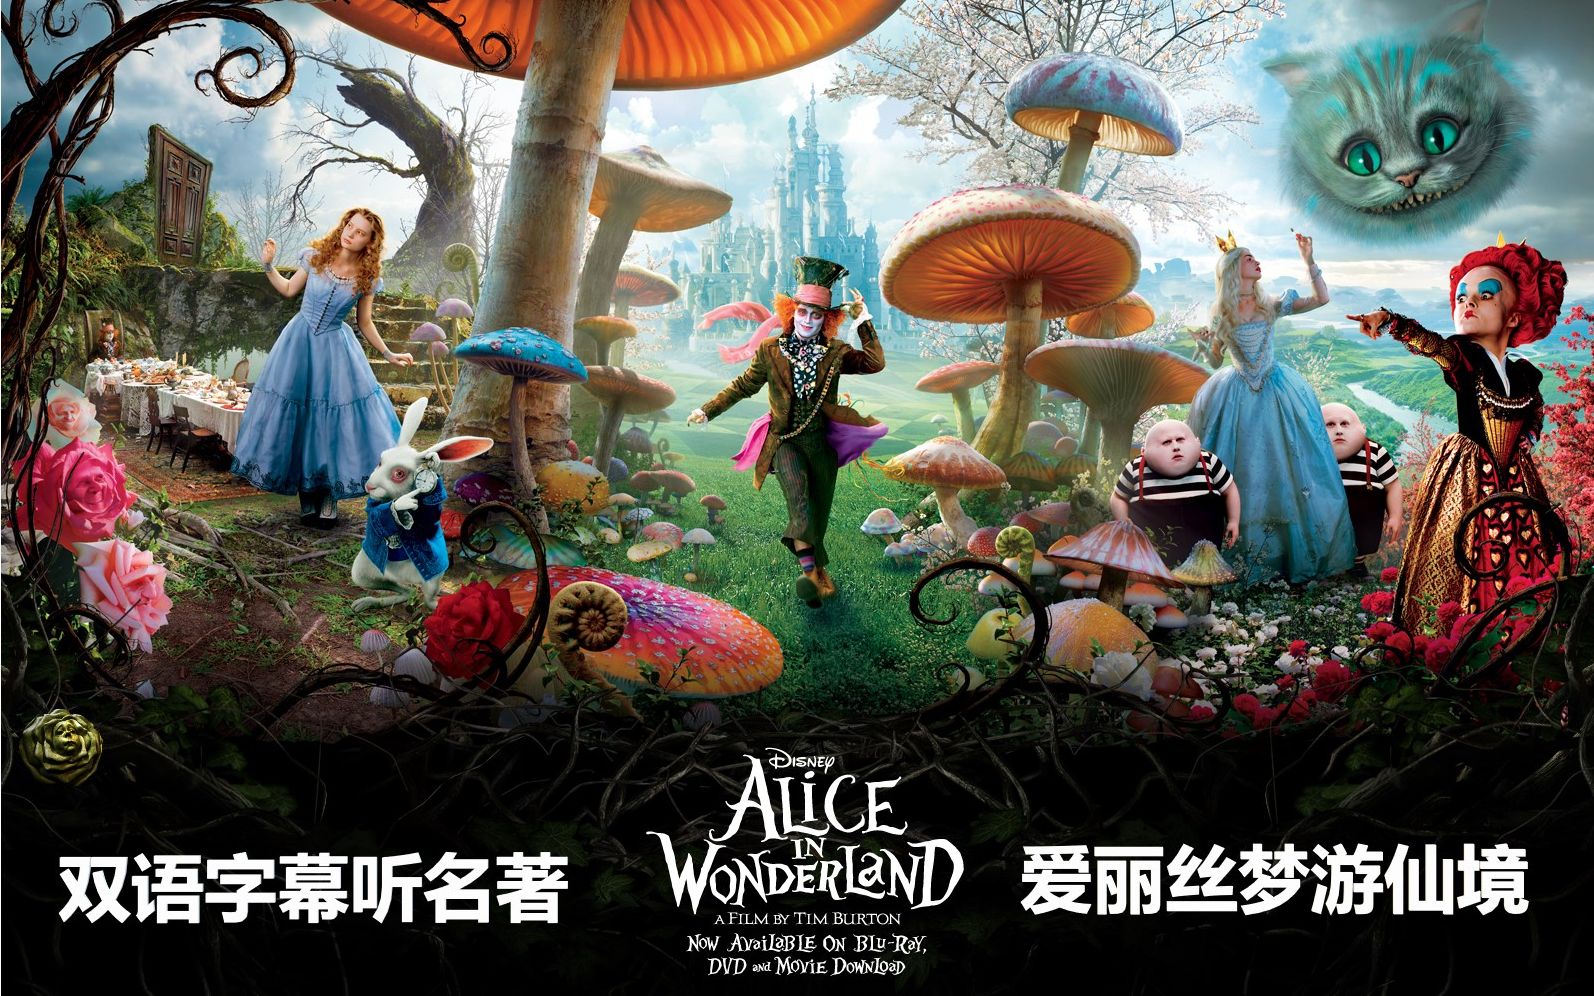 爱丽丝梦游仙境》Alice's Adventures in Wonderland  原版双语有声书【中英滚动字幕听经典名著】查尔斯·路特维奇·道奇森(精读名著)_哔哩哔哩(